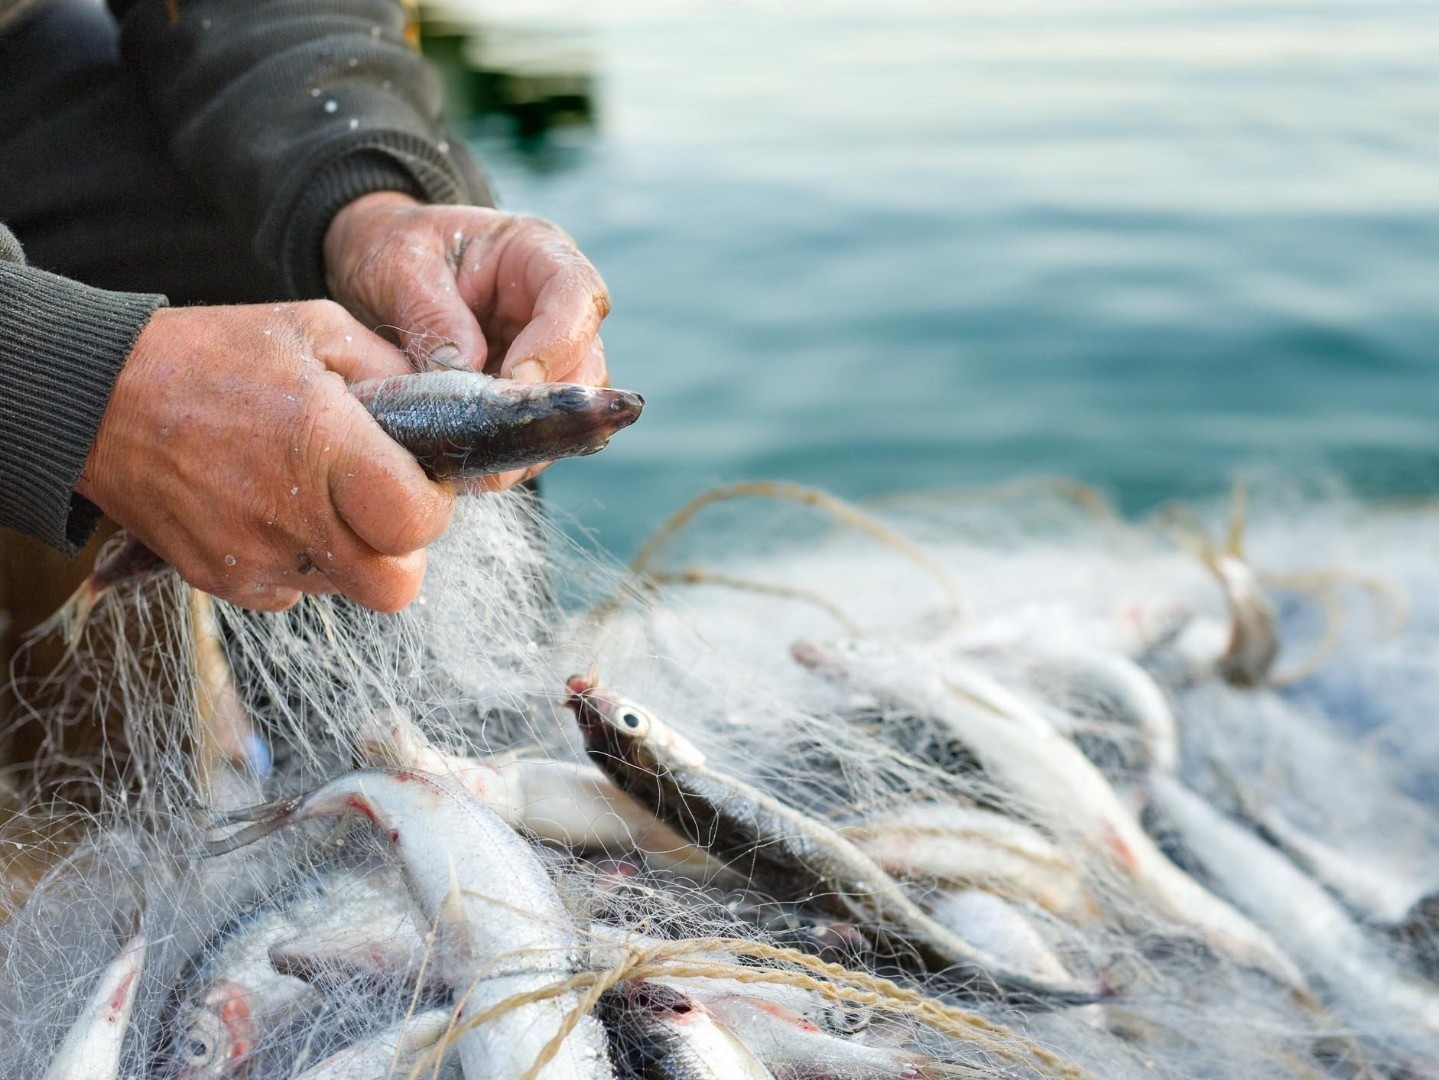 Катастрофическое обмеление Каспия вкупе с неблагоприятными климатическими особенностями региона, ограничения в правилах рыболовства и целый ряд других проблем вынуждает рыбаков оставлять исконный промысел